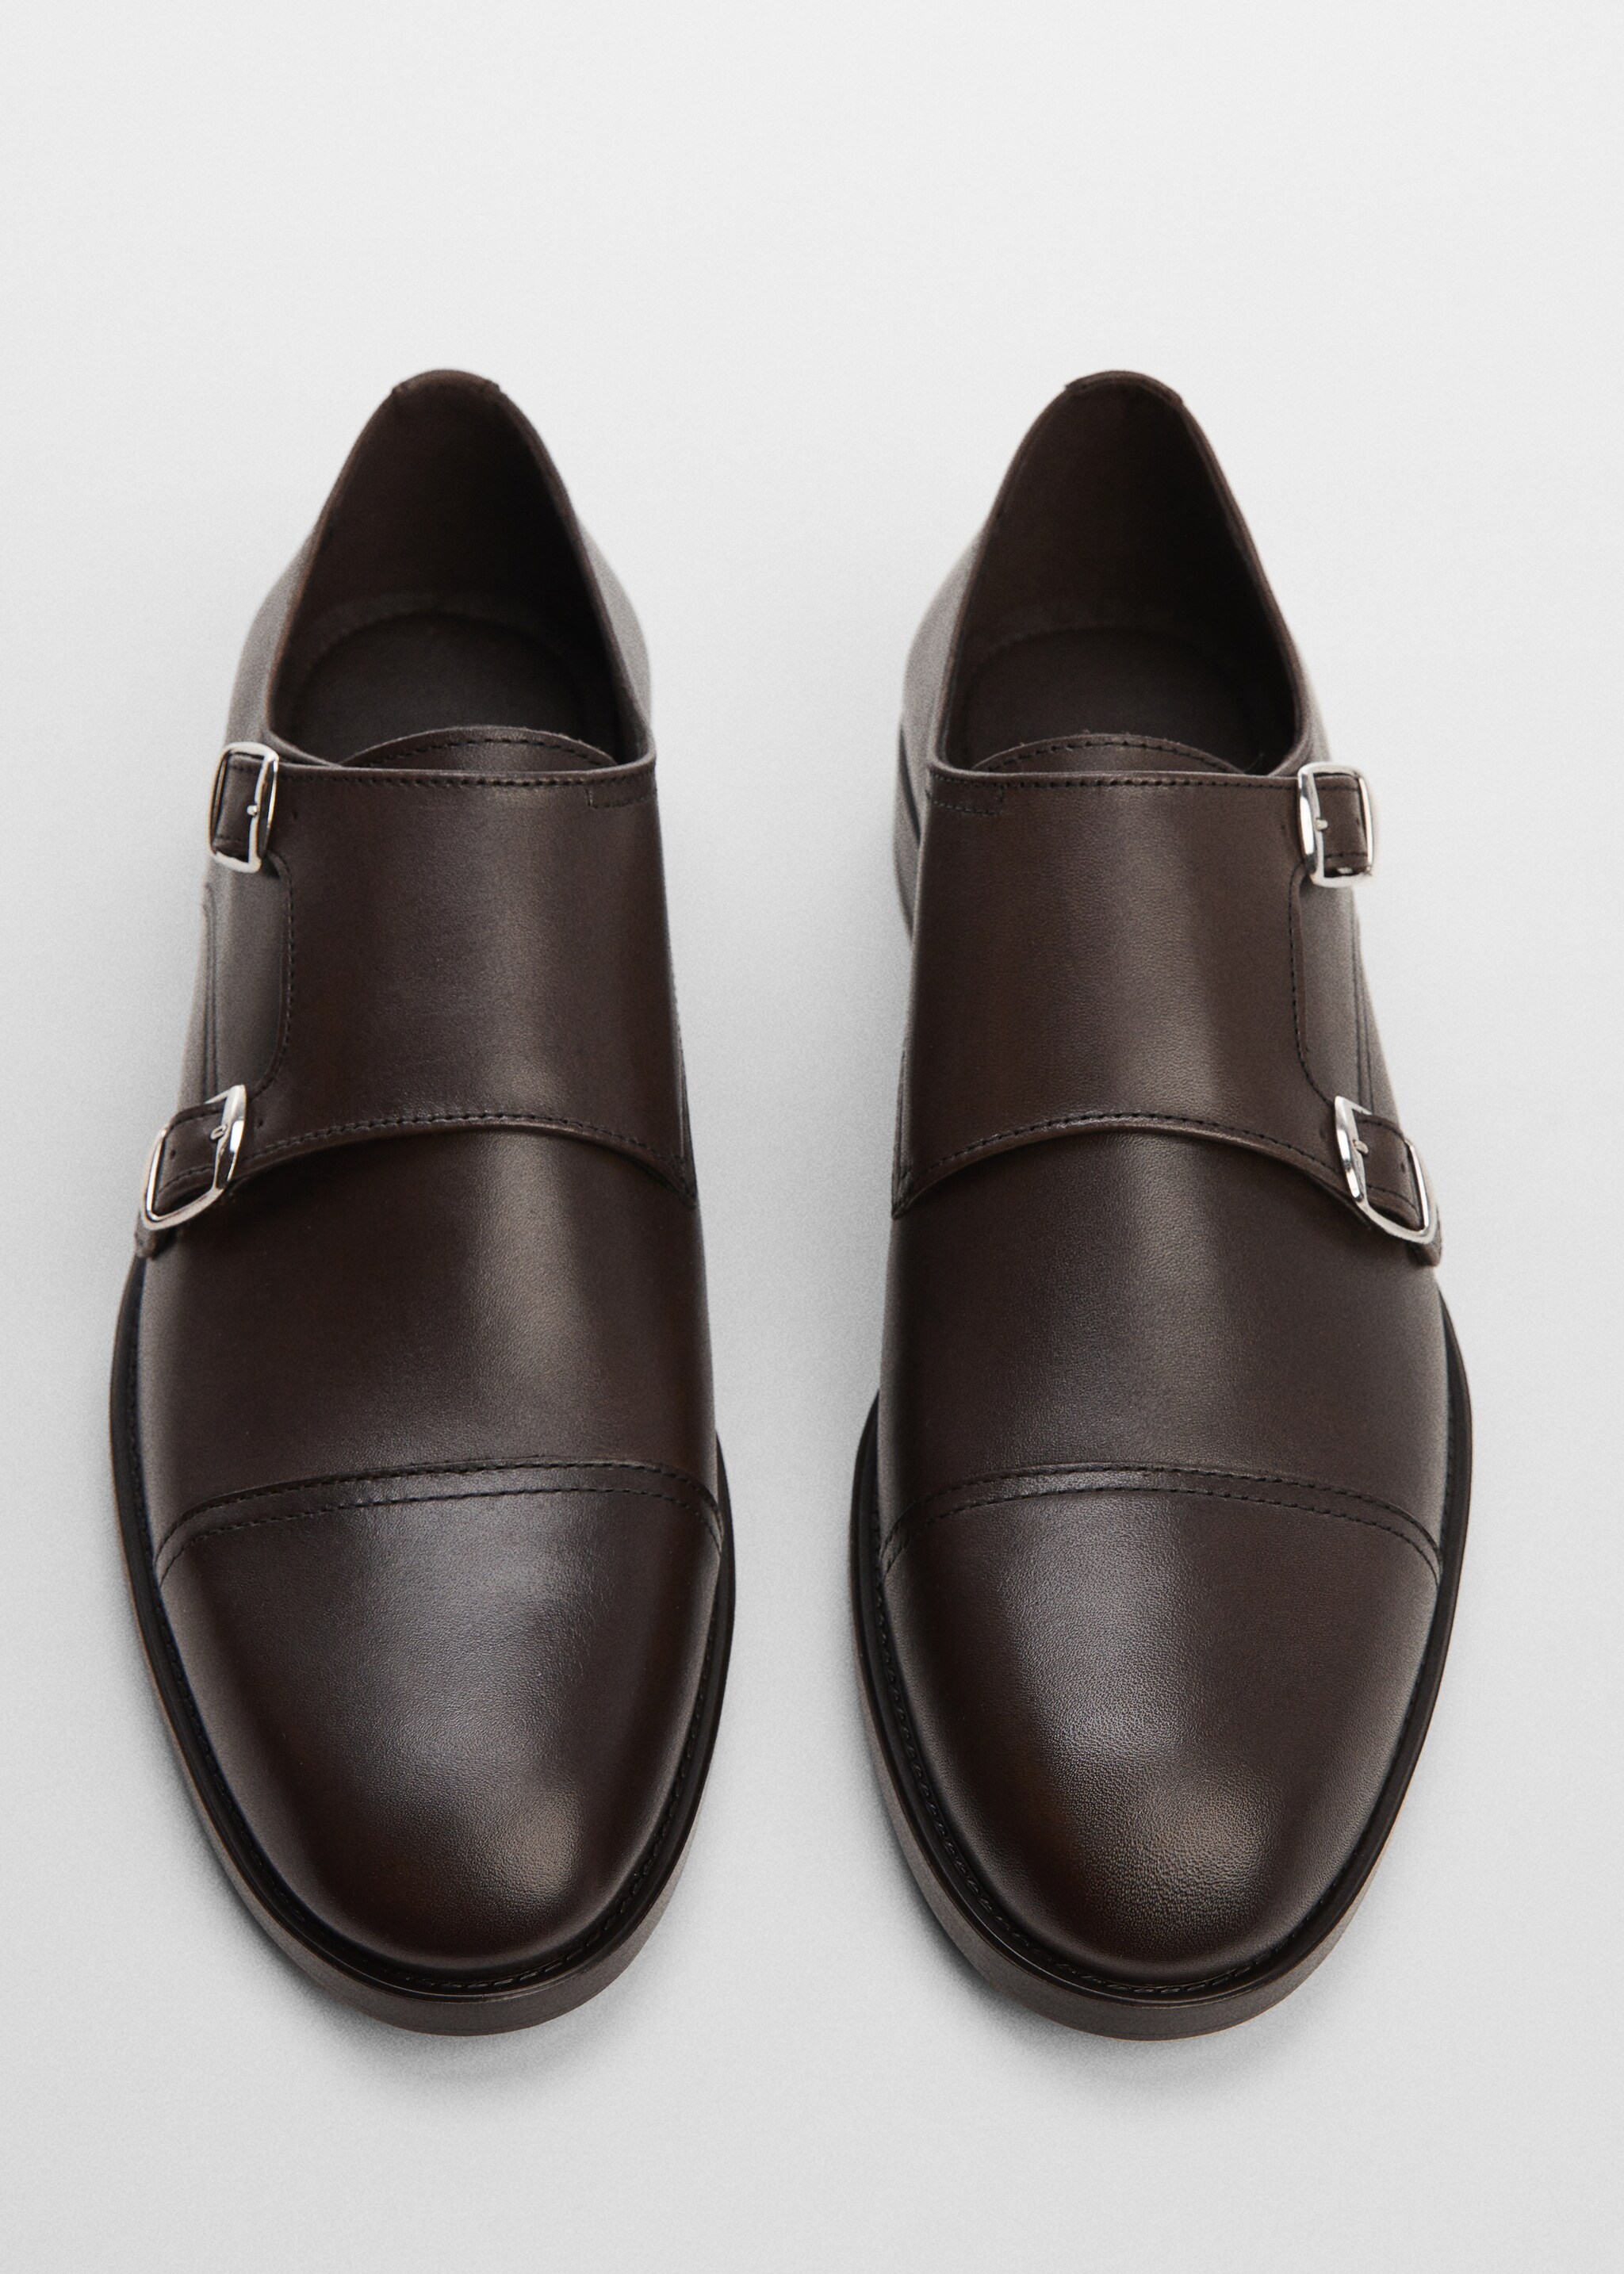 Παπούτσια κοστουμιού δέρμα - Λεπτομέρεια του προϊόντος 2